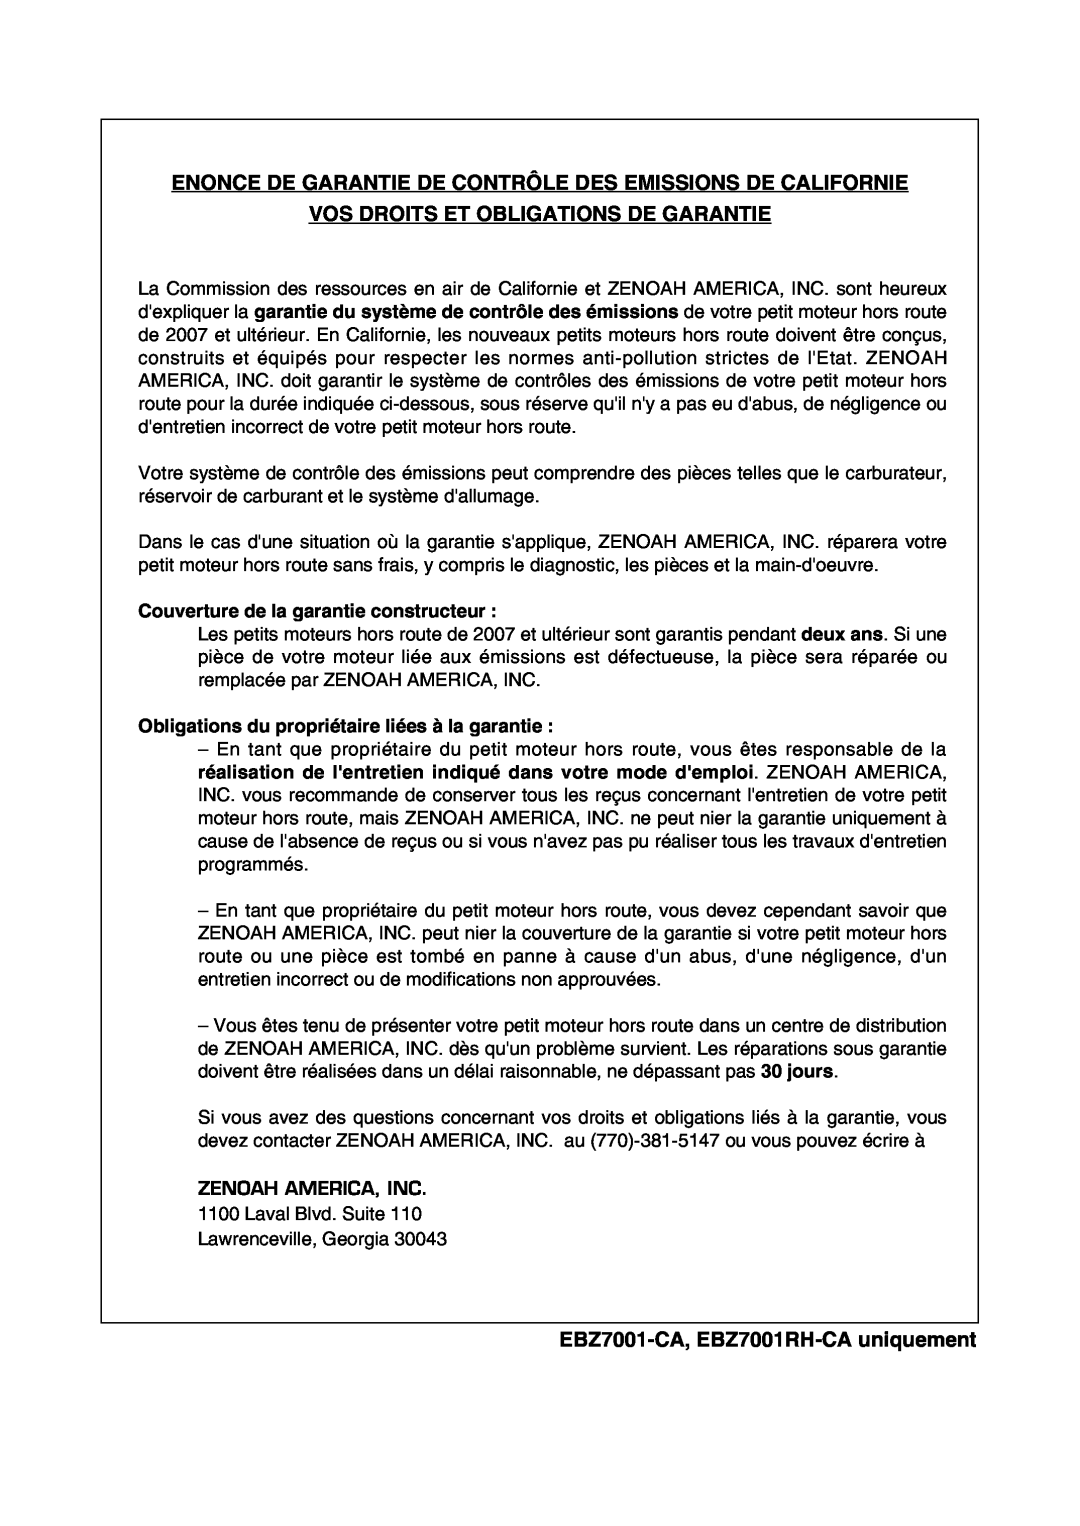 RedMax EBZ7001-CA manual Enonce De Garantie De Contrôle Des Emissions De Californie, Vos Droits Et Obligations De Garantie 